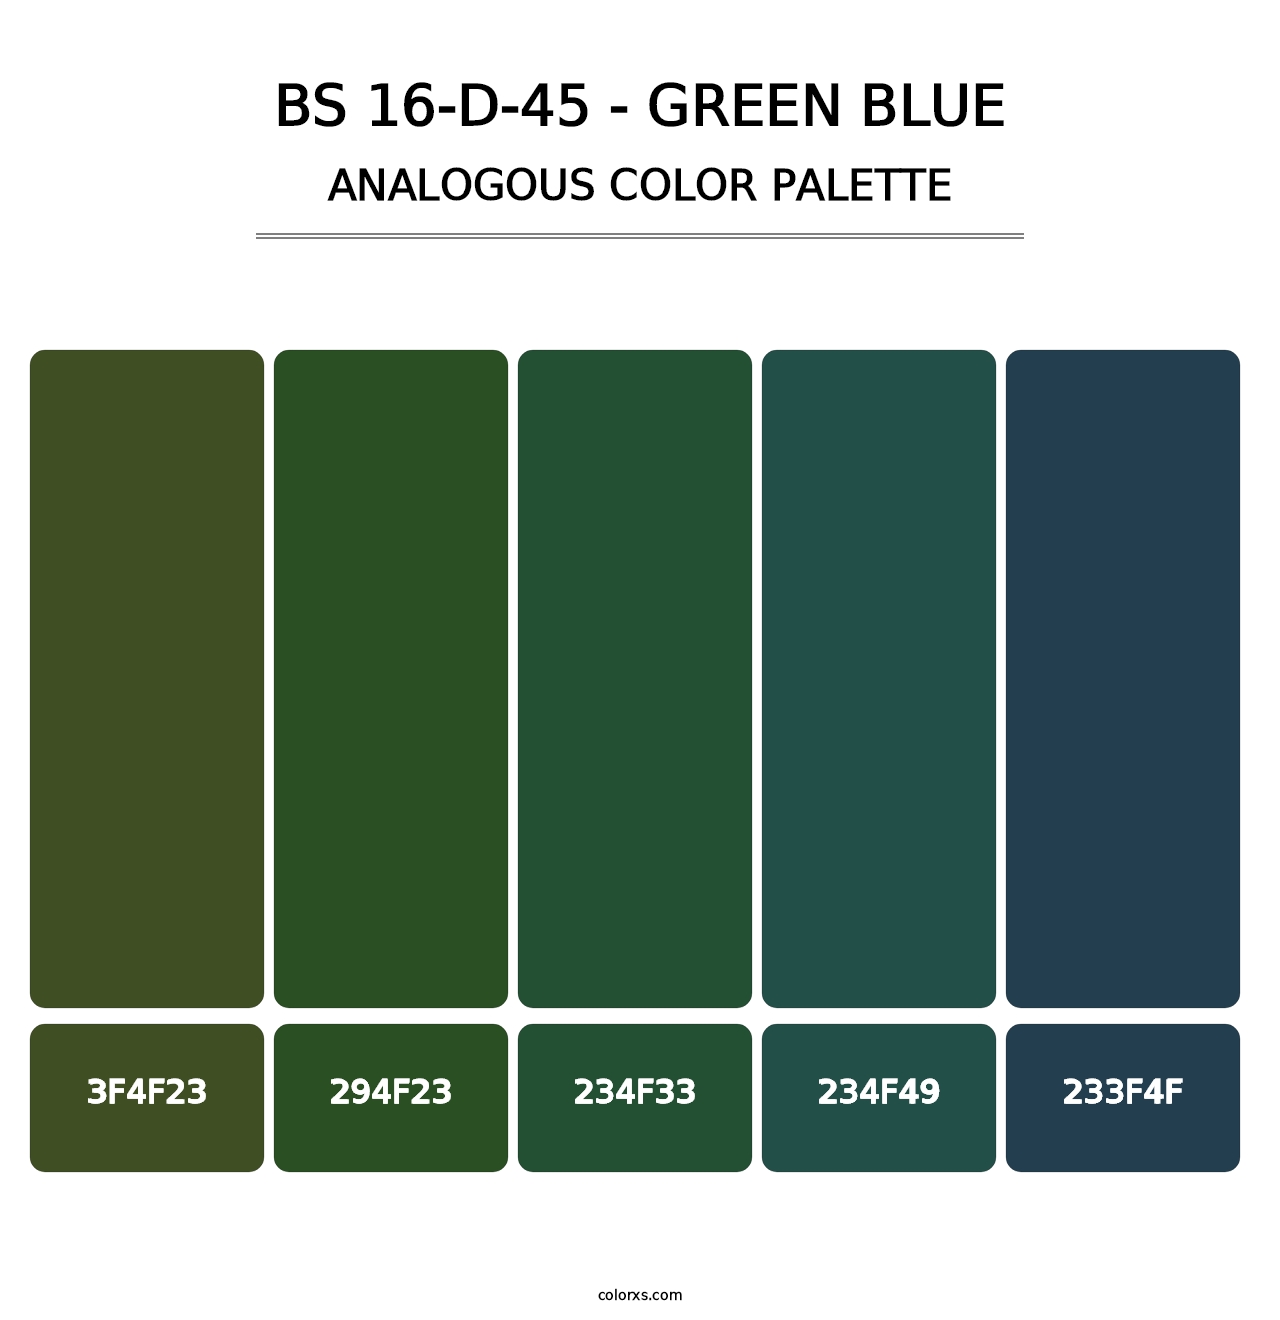 BS 16-D-45 - Green Blue - Analogous Color Palette